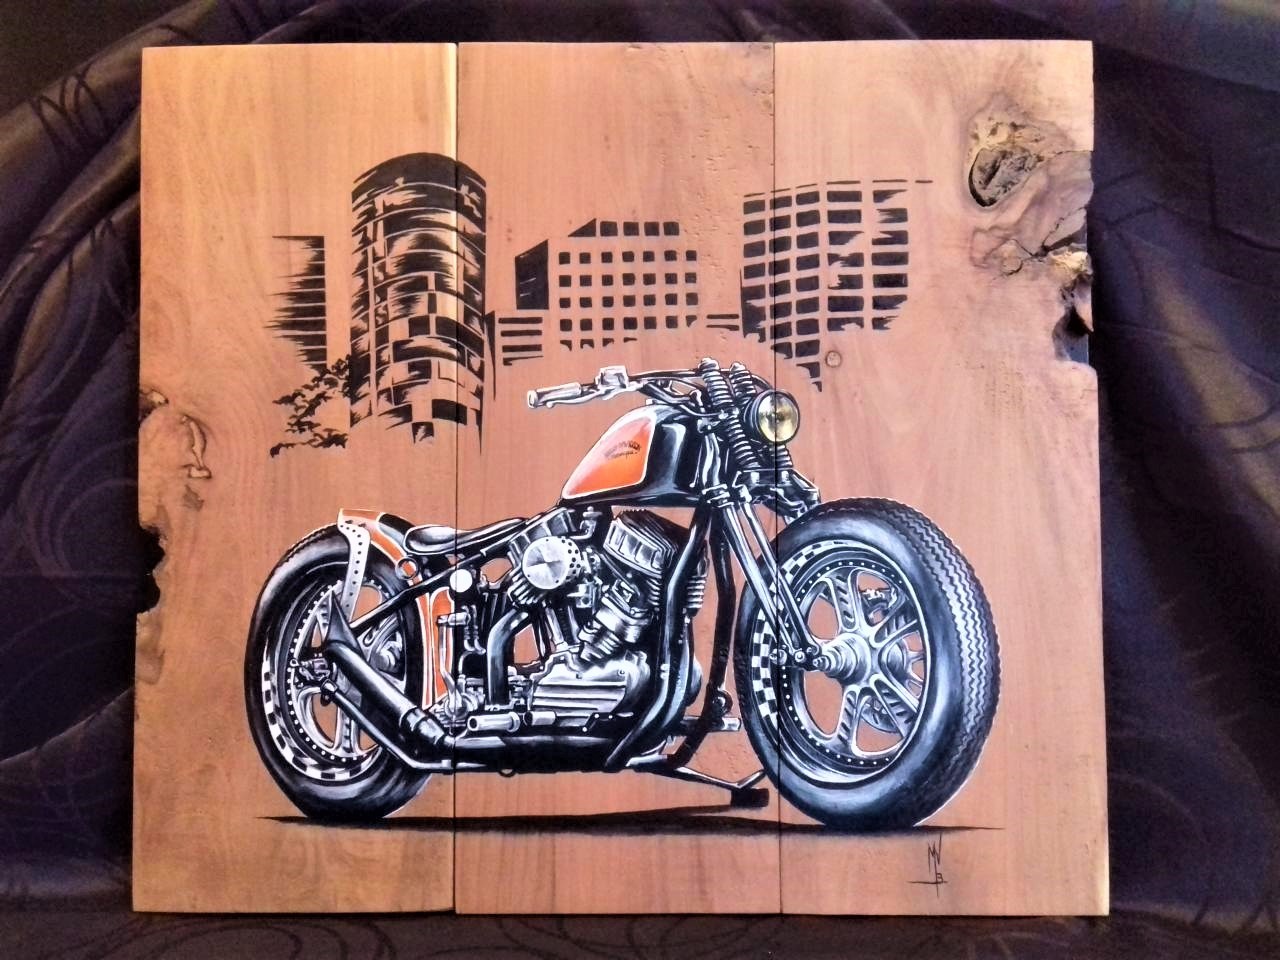 Harley custom